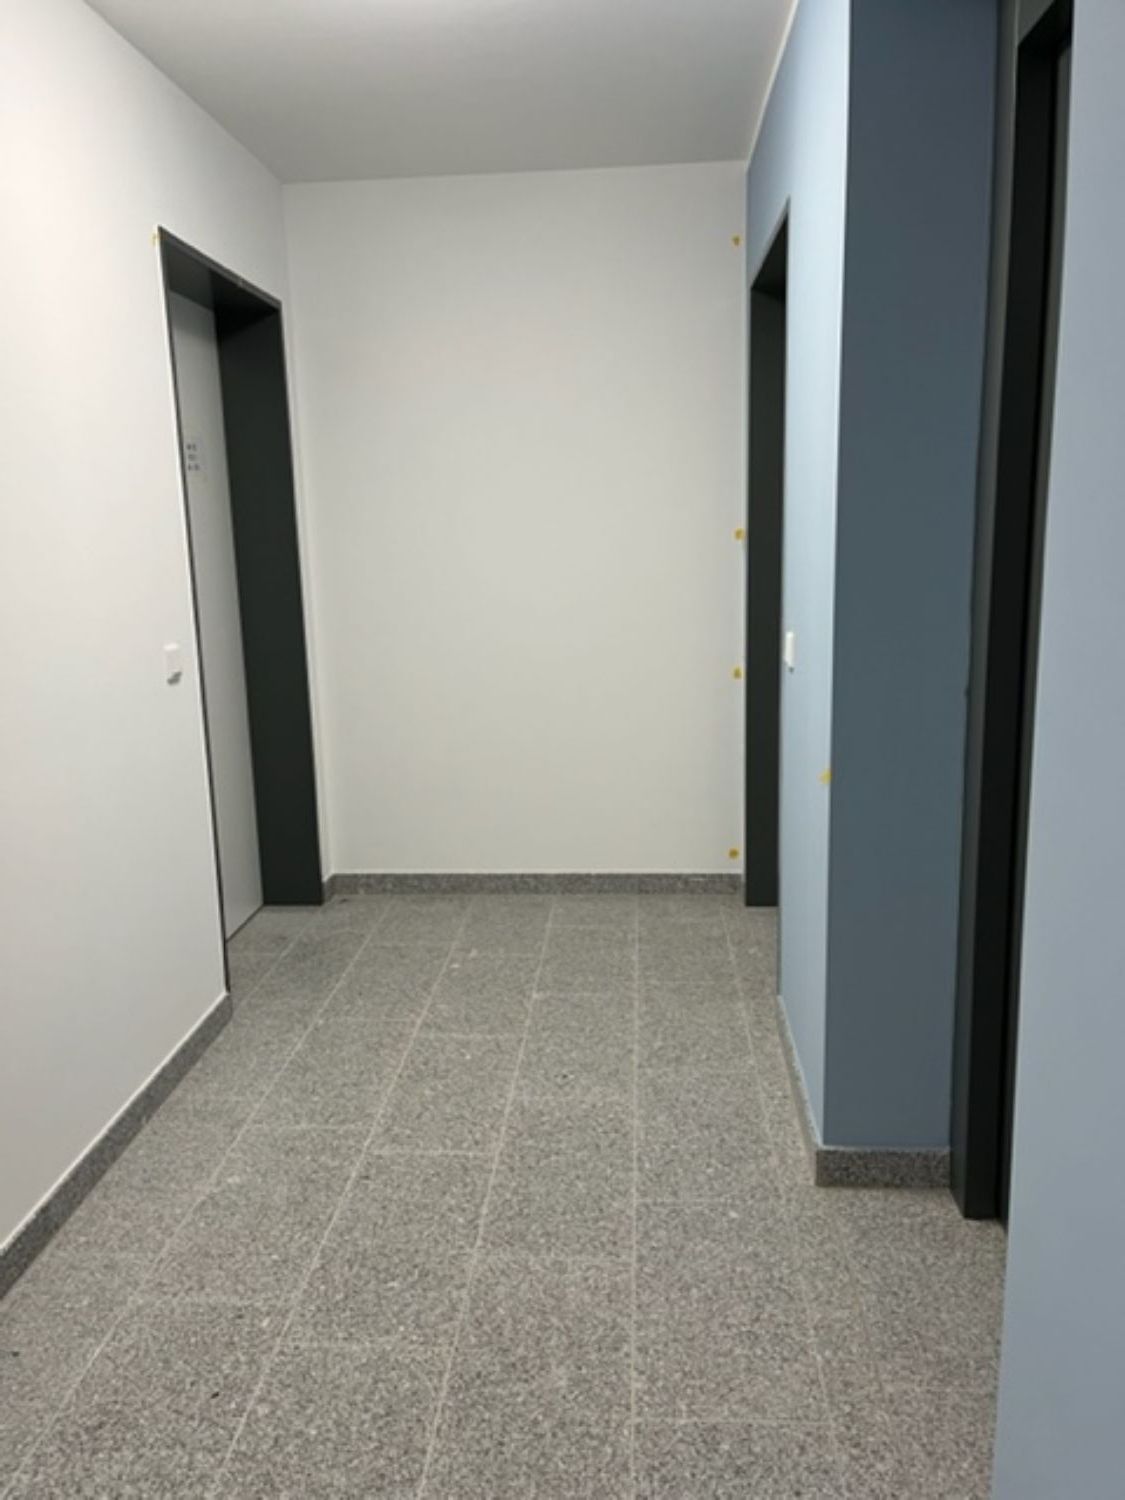 Barrierefreier Zugang, vom Erdgeschoss bis in die Wohnung durch Aufzug